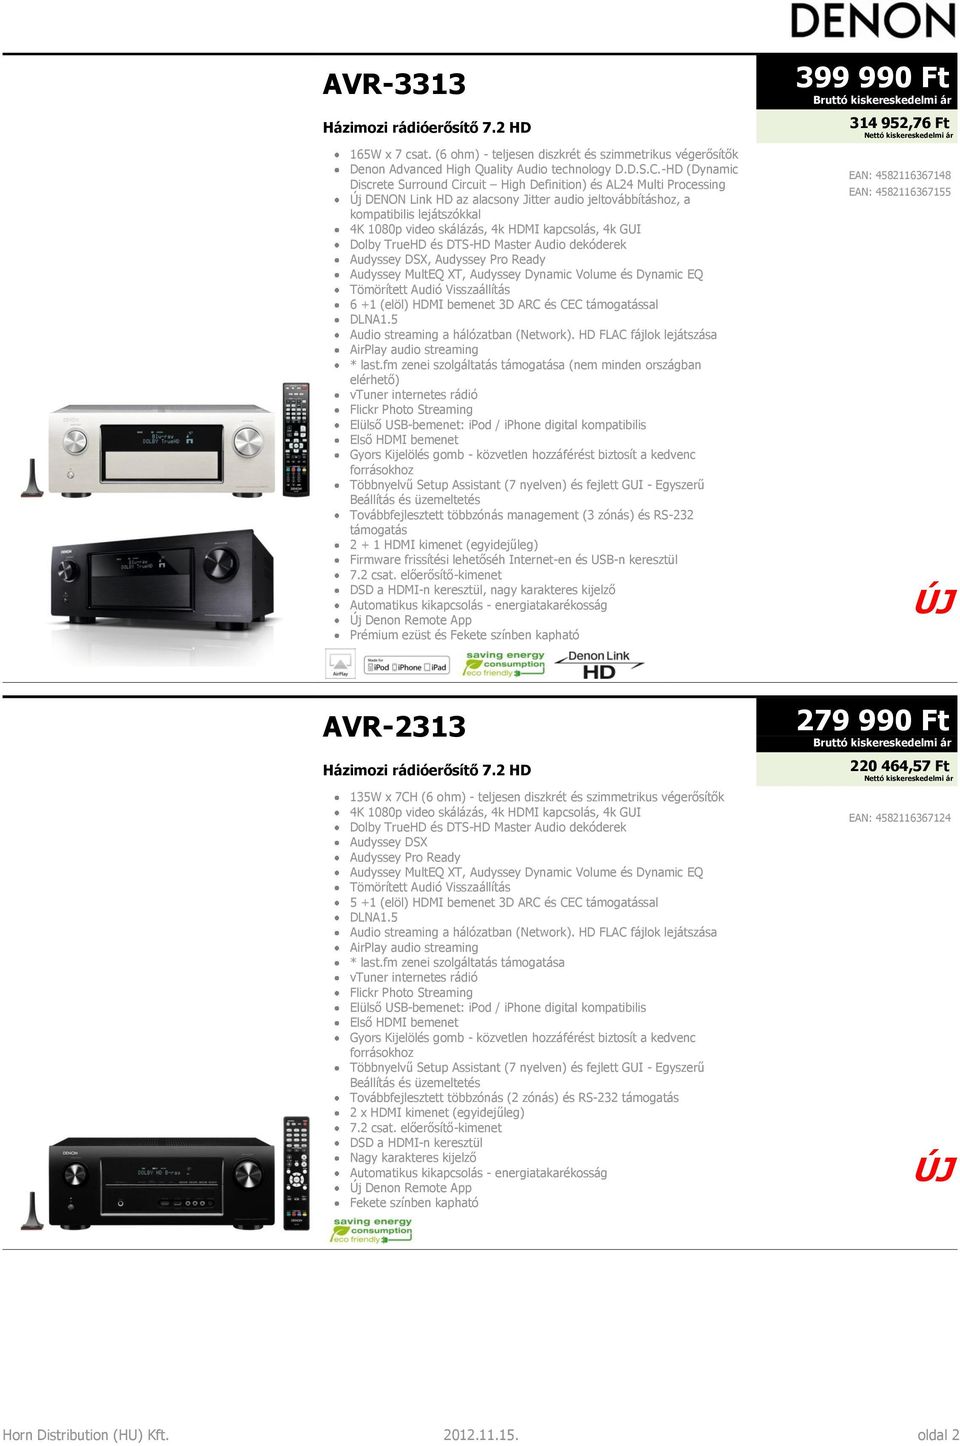 HDMI kapcsolás, 4k GUI Dolby TrueHD és DTS-HD Master Audio dekóderek Audyssey DSX, Audyssey Pro Ready Audyssey MultEQ XT, Audyssey Dynamic Volume és Dynamic EQ Tömörített Audió Visszaállítás 6 +1